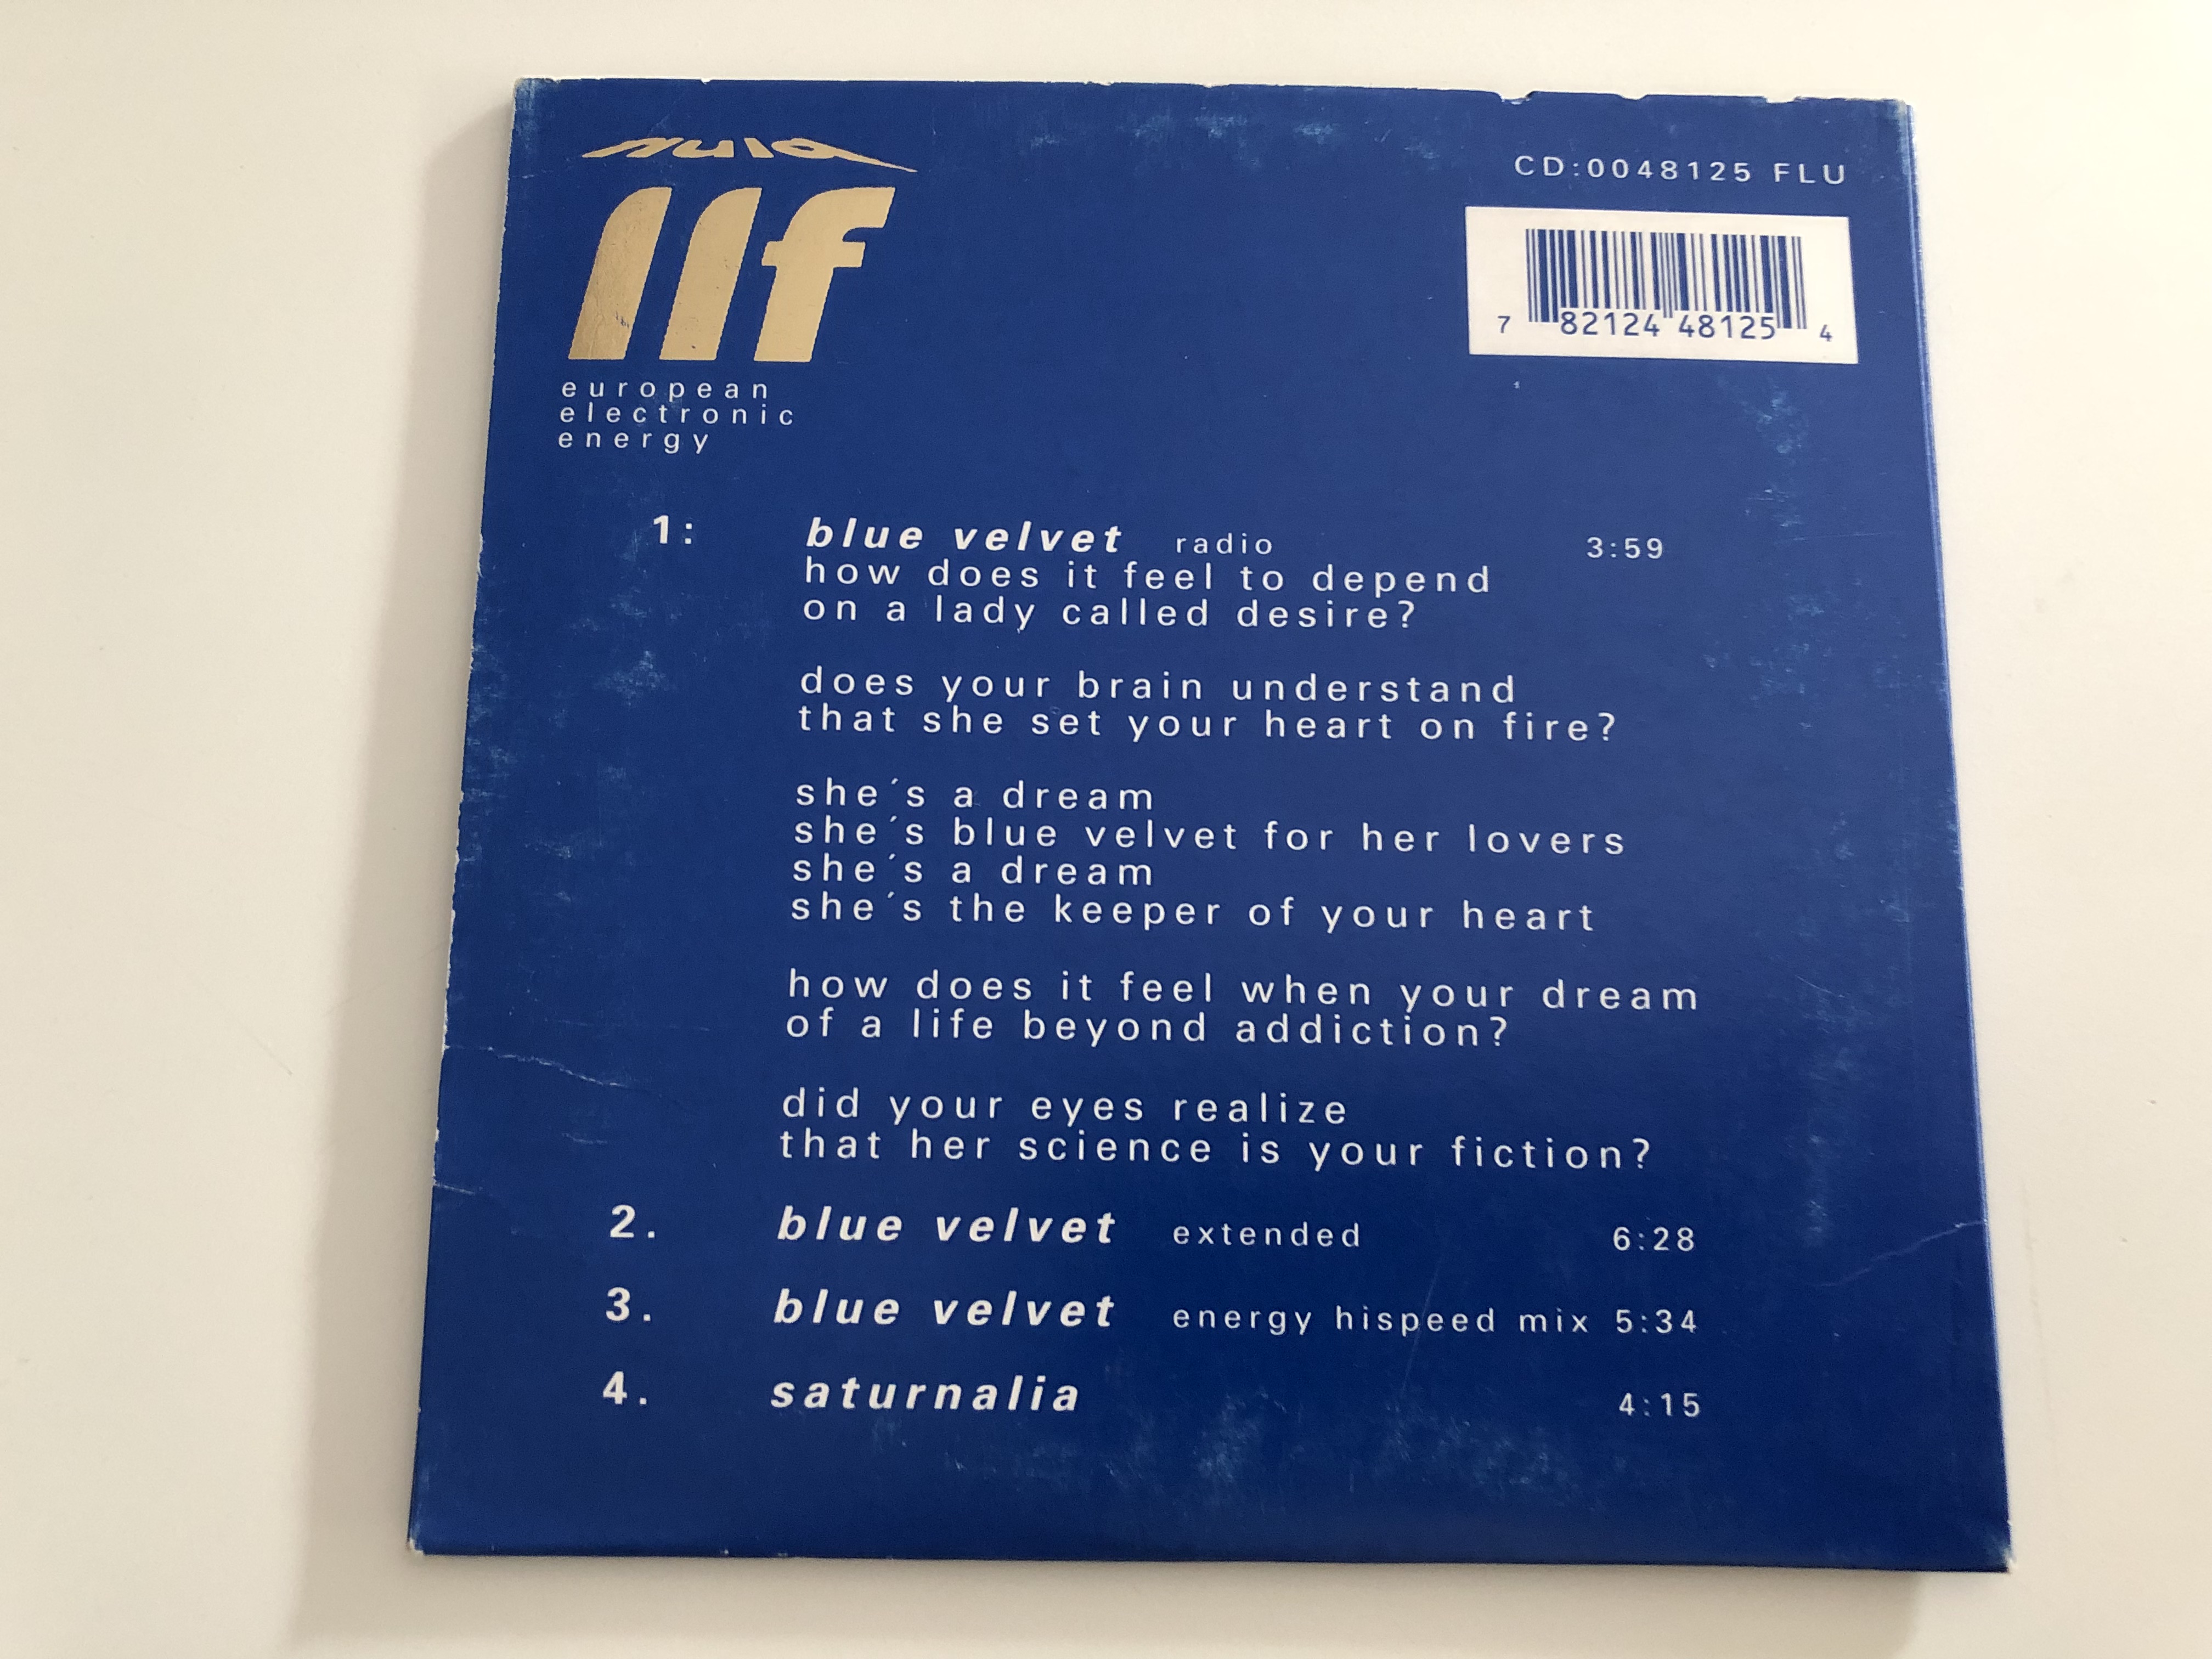 boytronic-blue-velvet-cd-0048125-flu-audio-cd-1995-3-.jpg